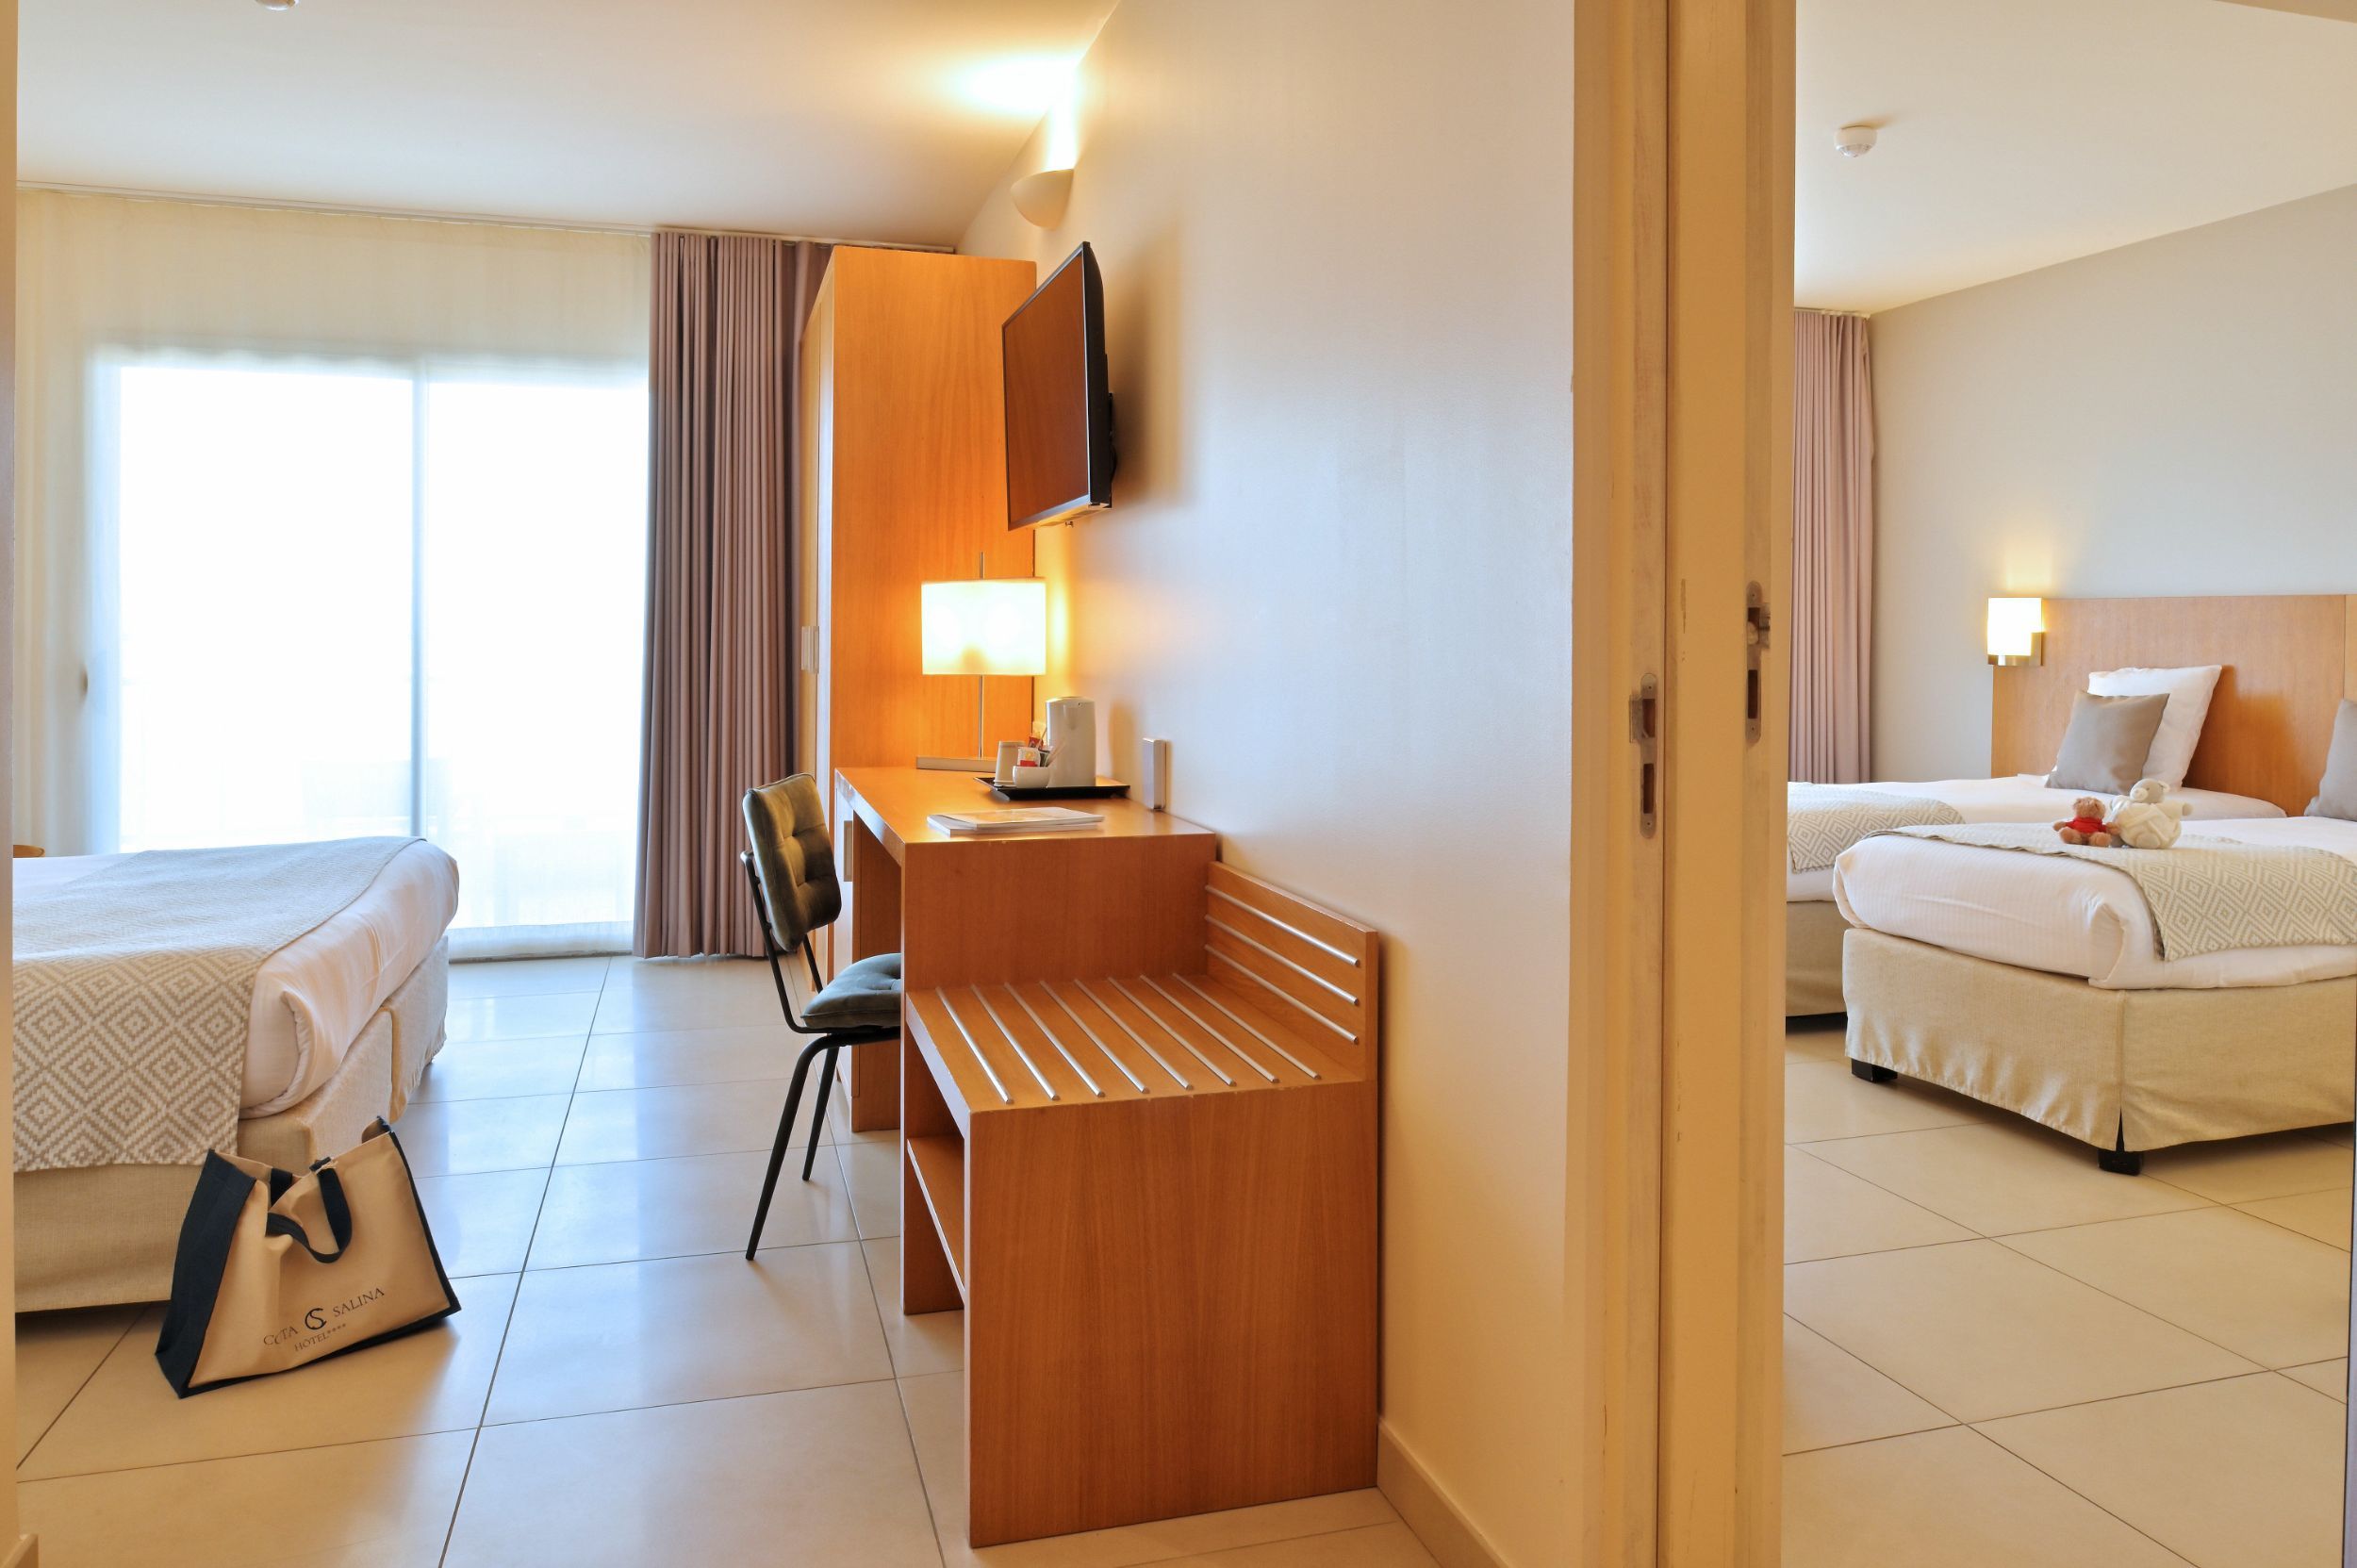 Une chambre d'hôtel avec vue piscine à Porto-Vecchio | Hôtel Costa Salina